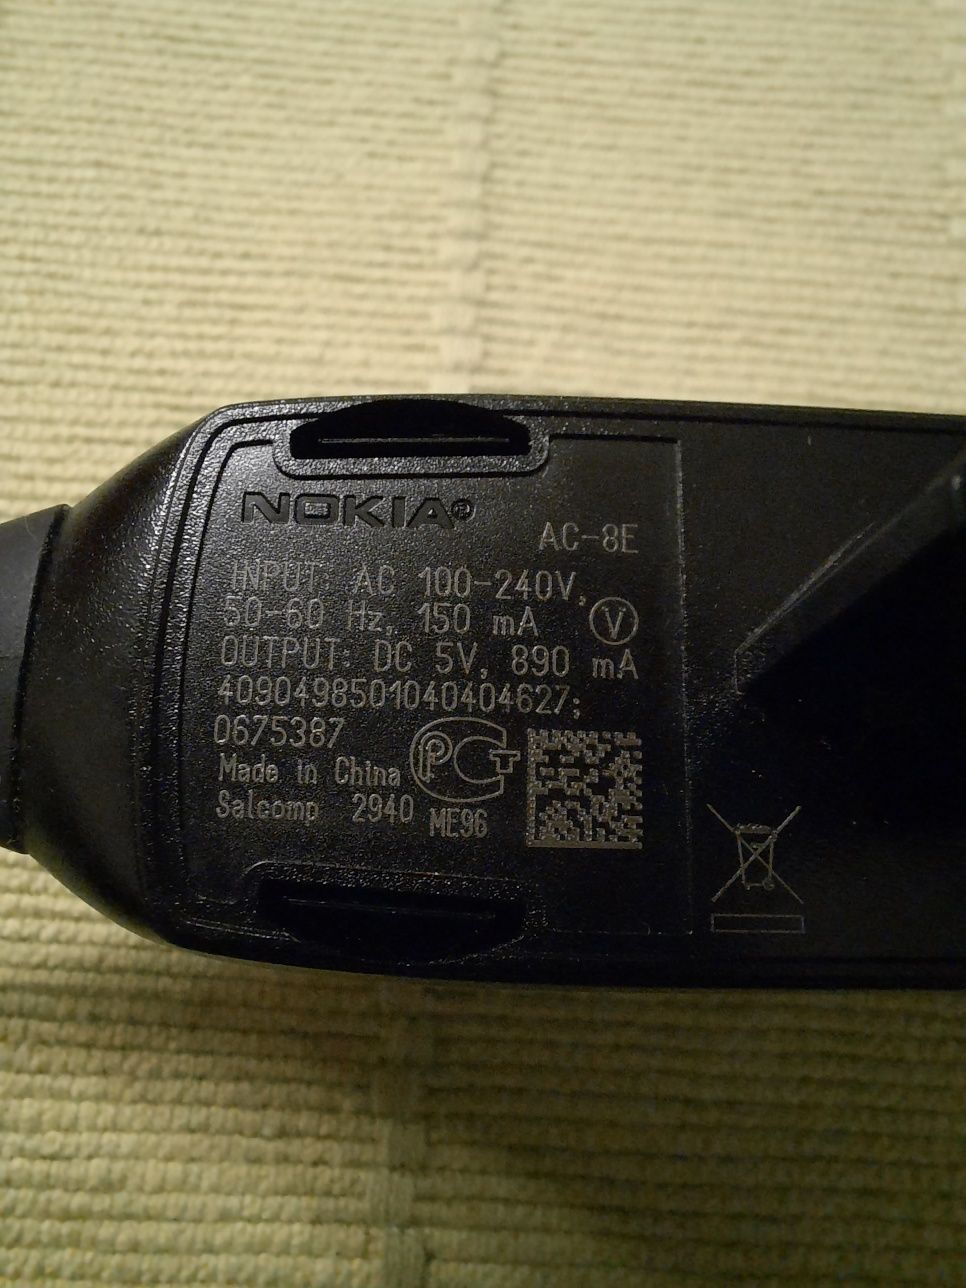 Nokia: Carregador telemóvel modelo AC-8E